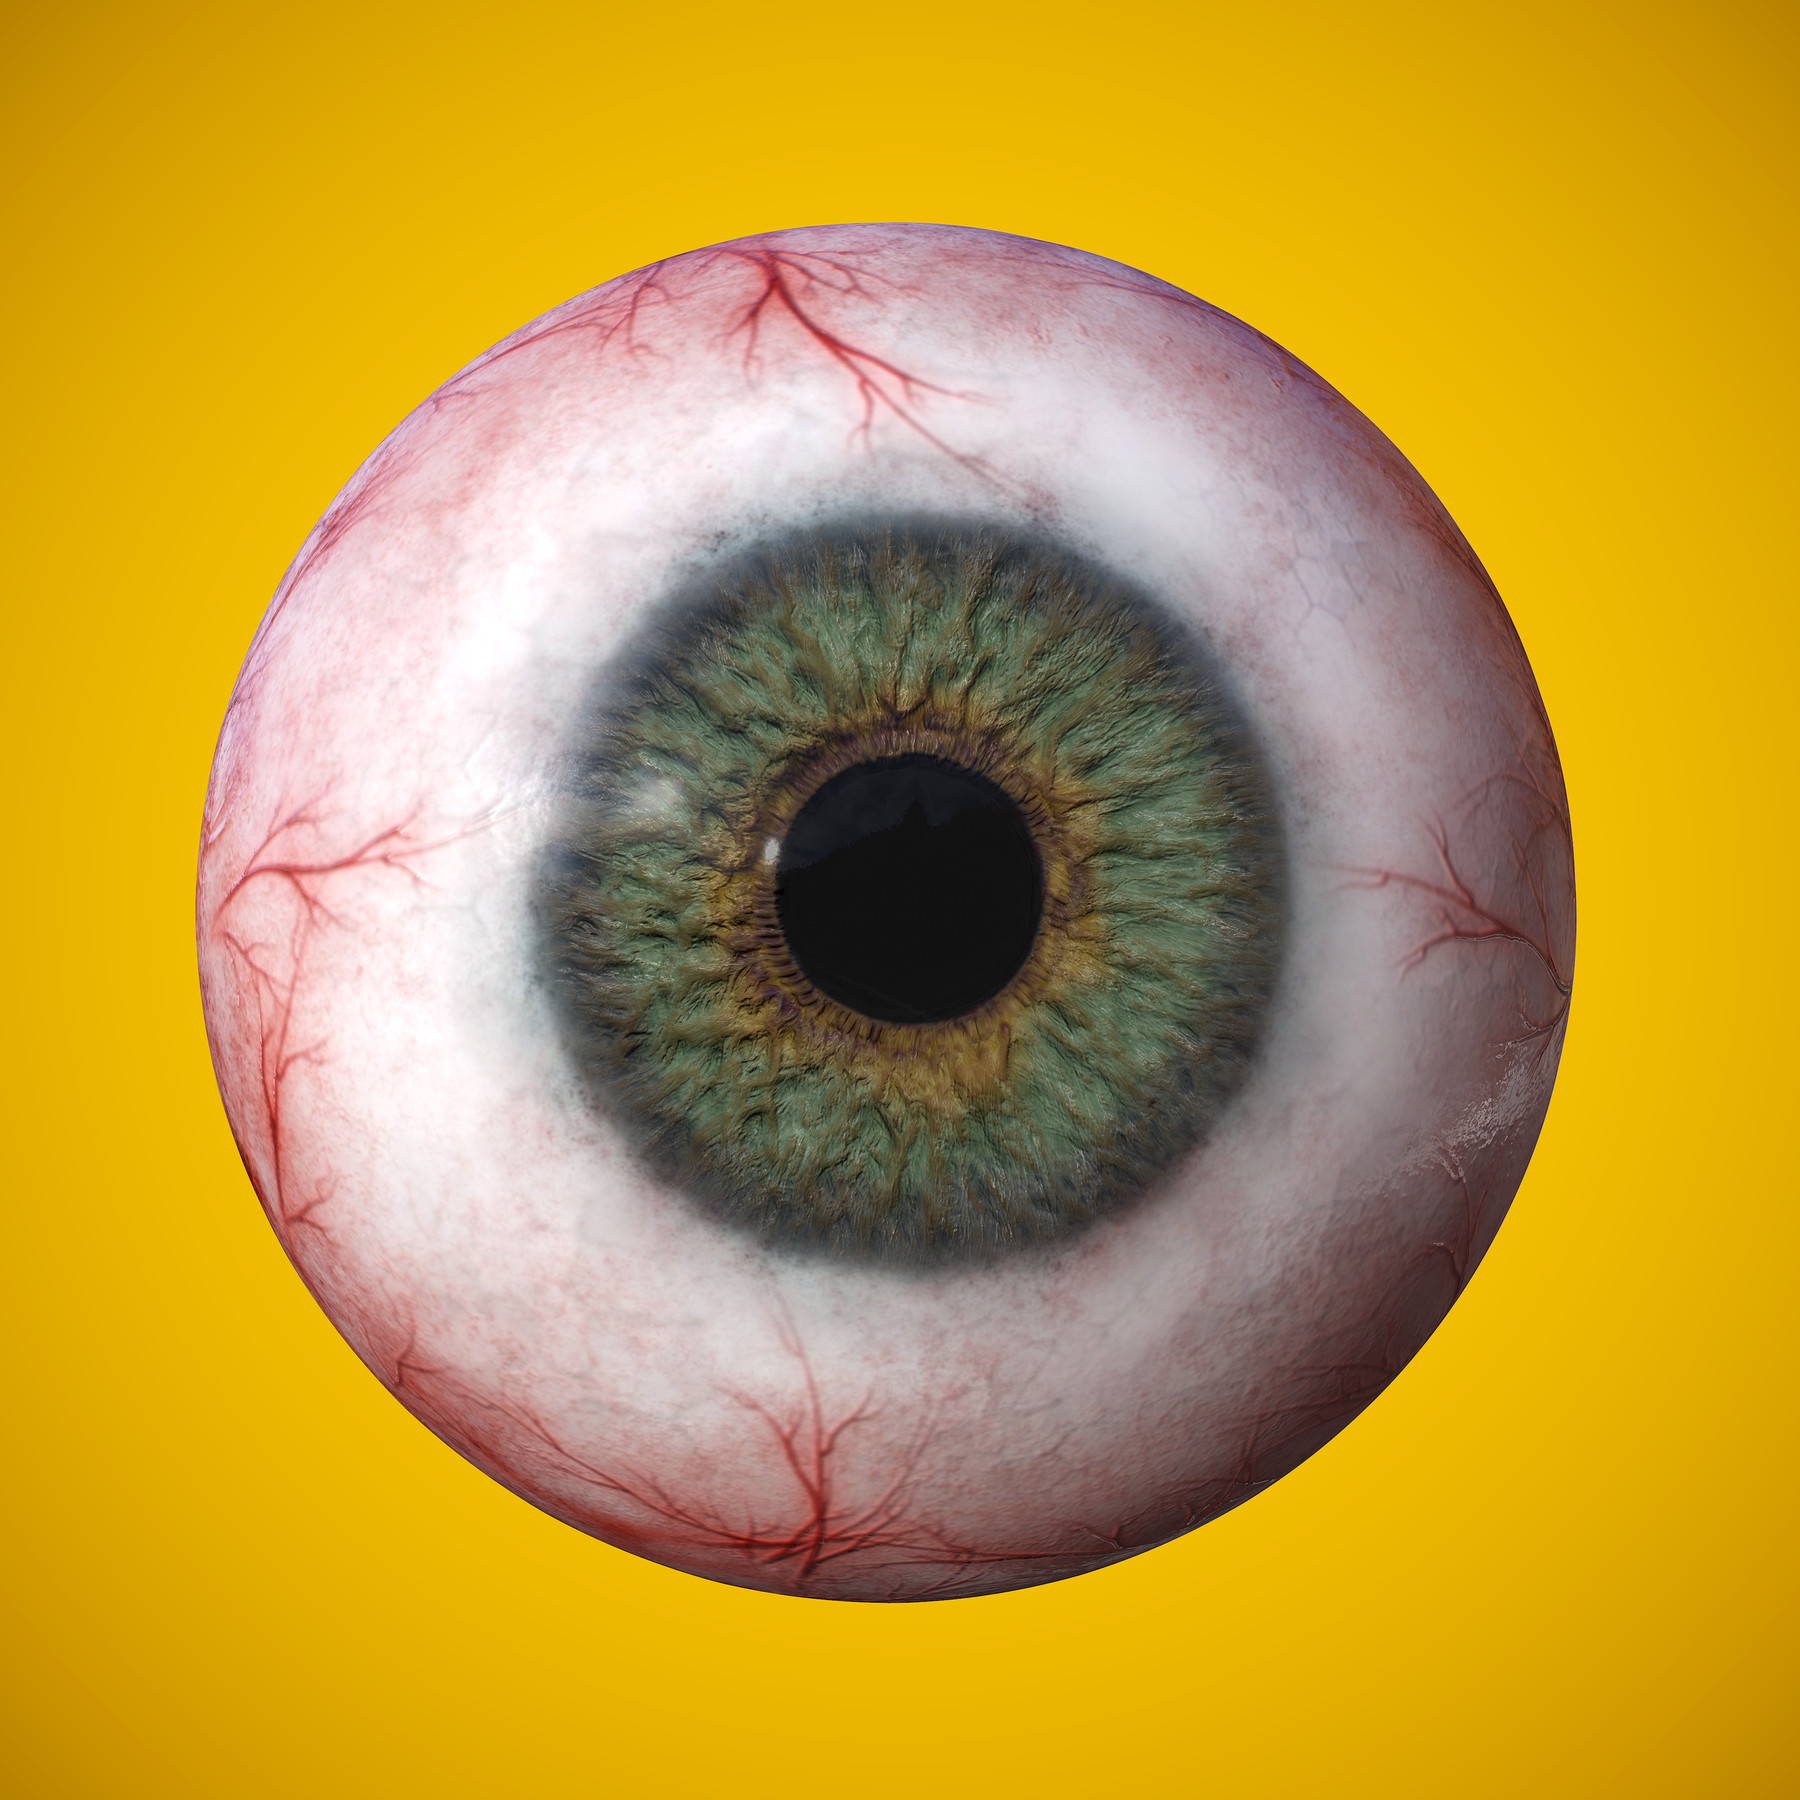 ArtStation - Eye anatomy photorealistic eyeball | Resources